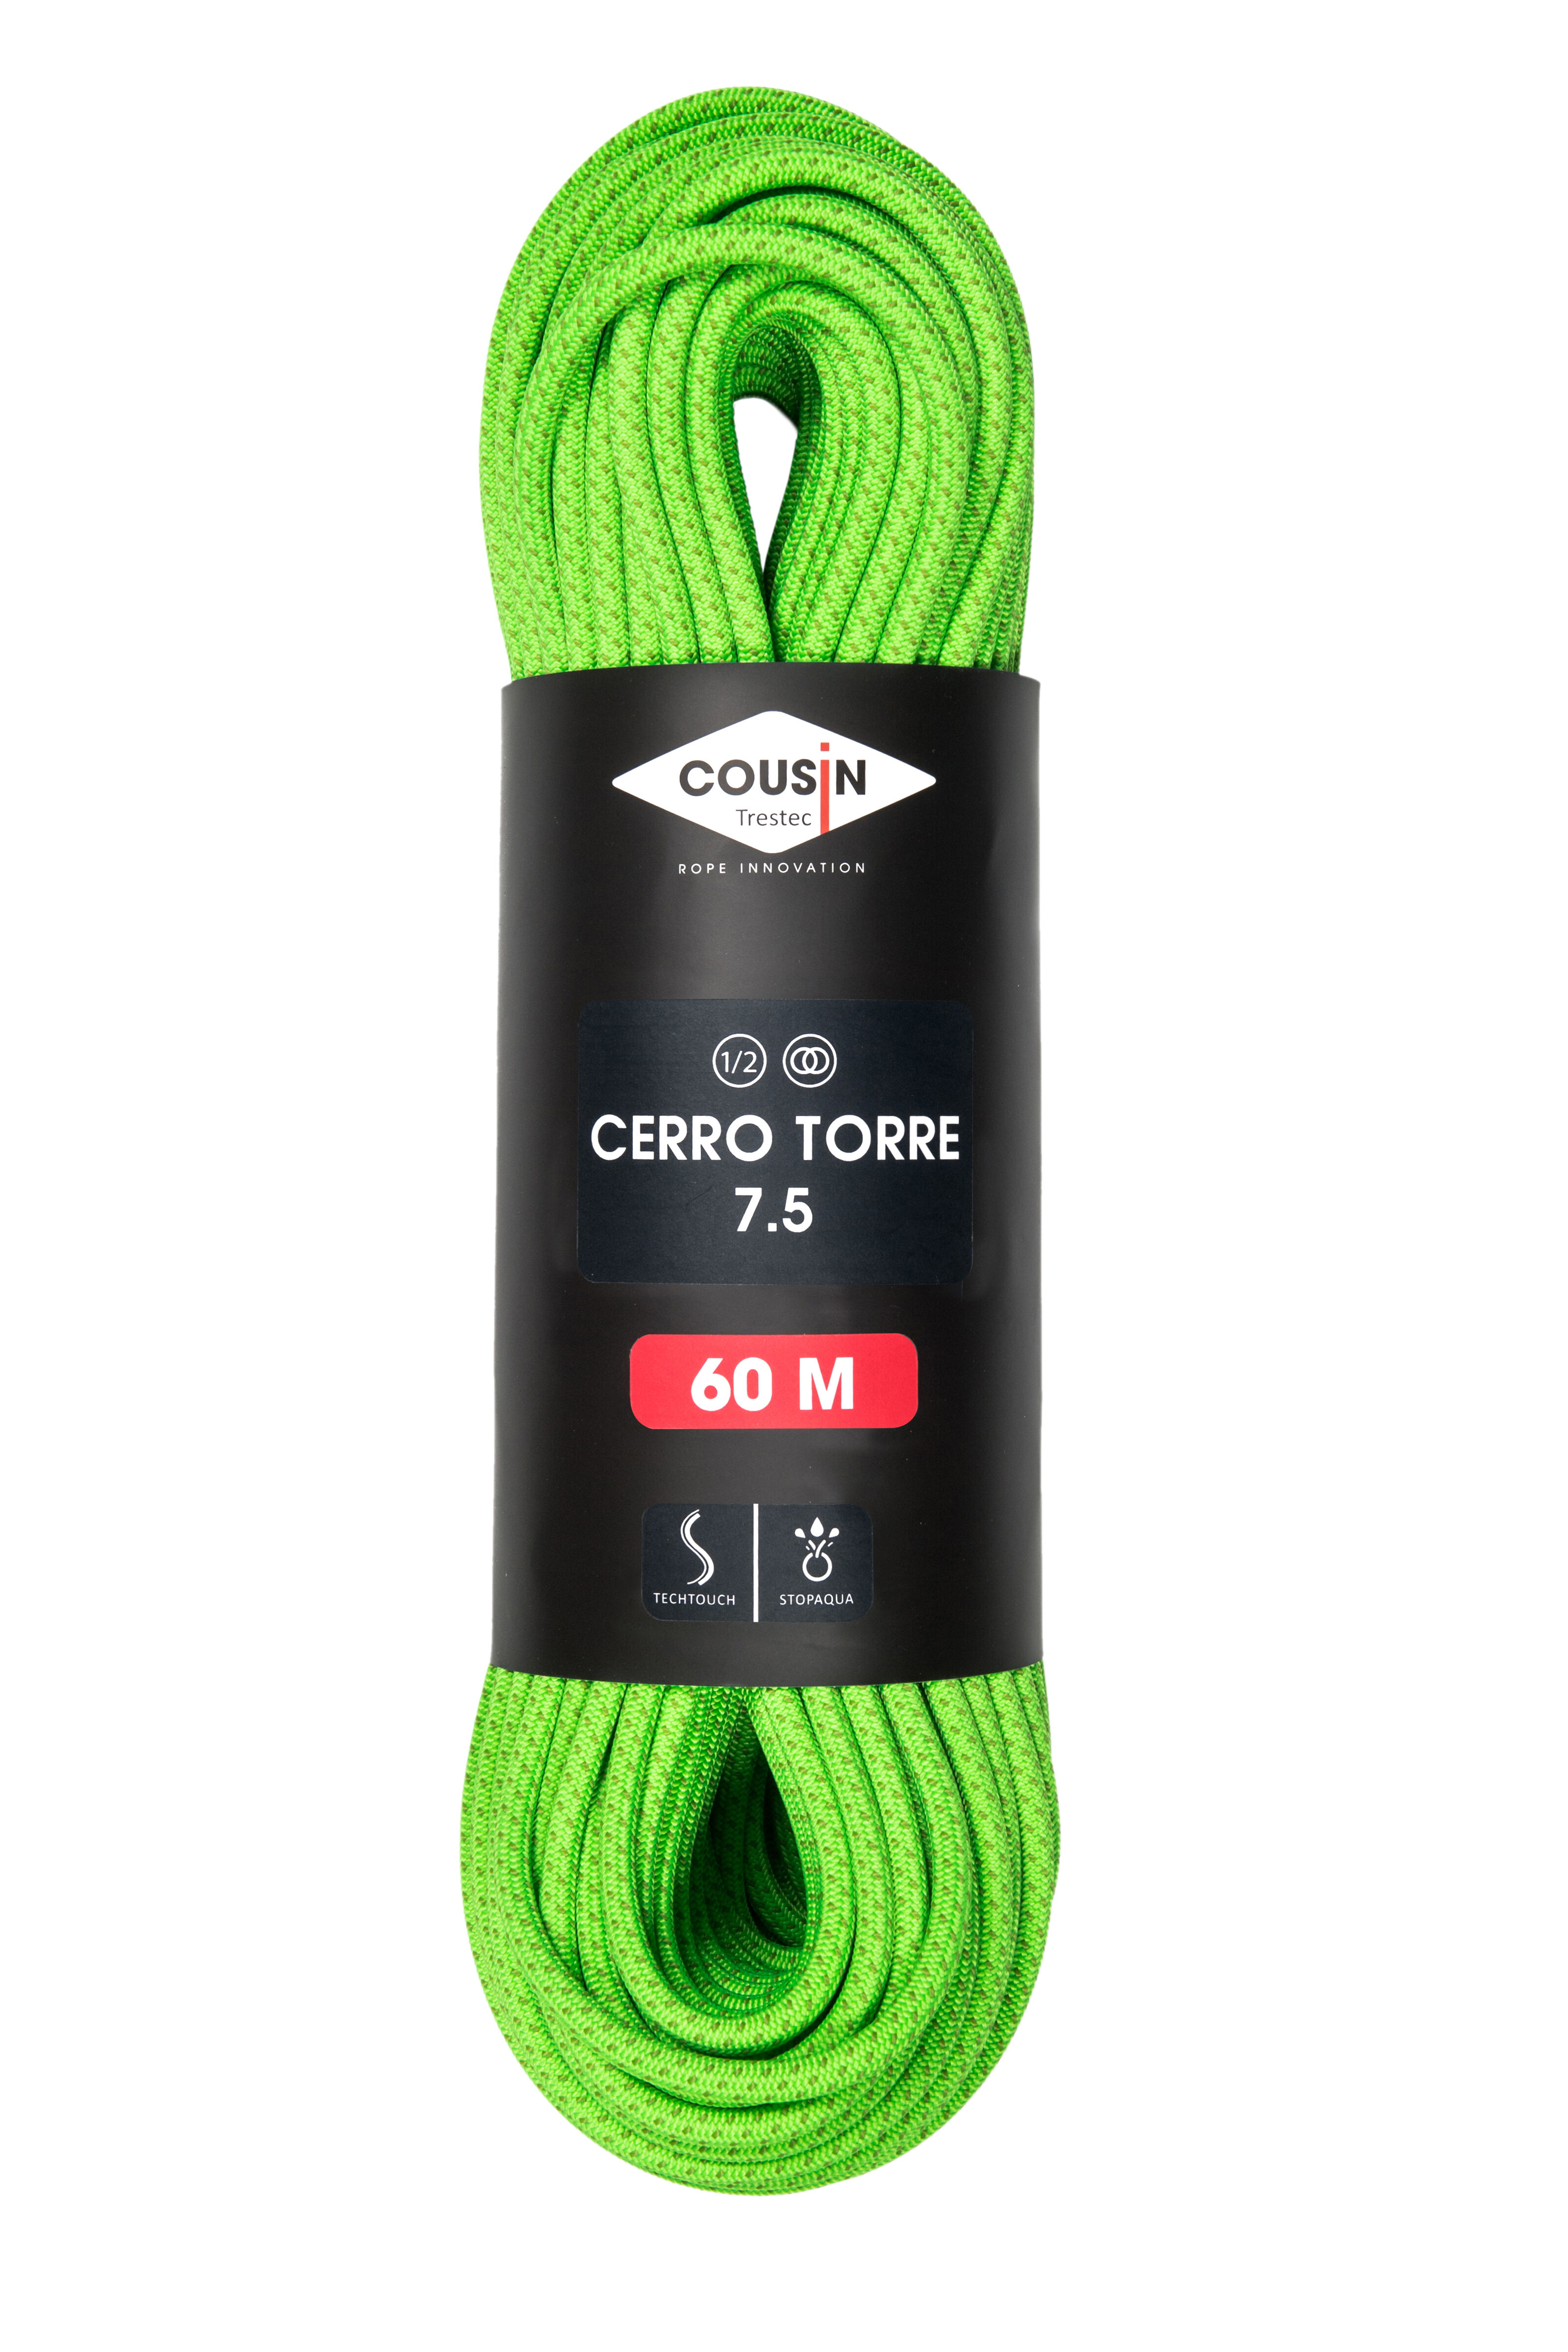 Cousin Trestec Cerro Torre 7.5 - Half rope